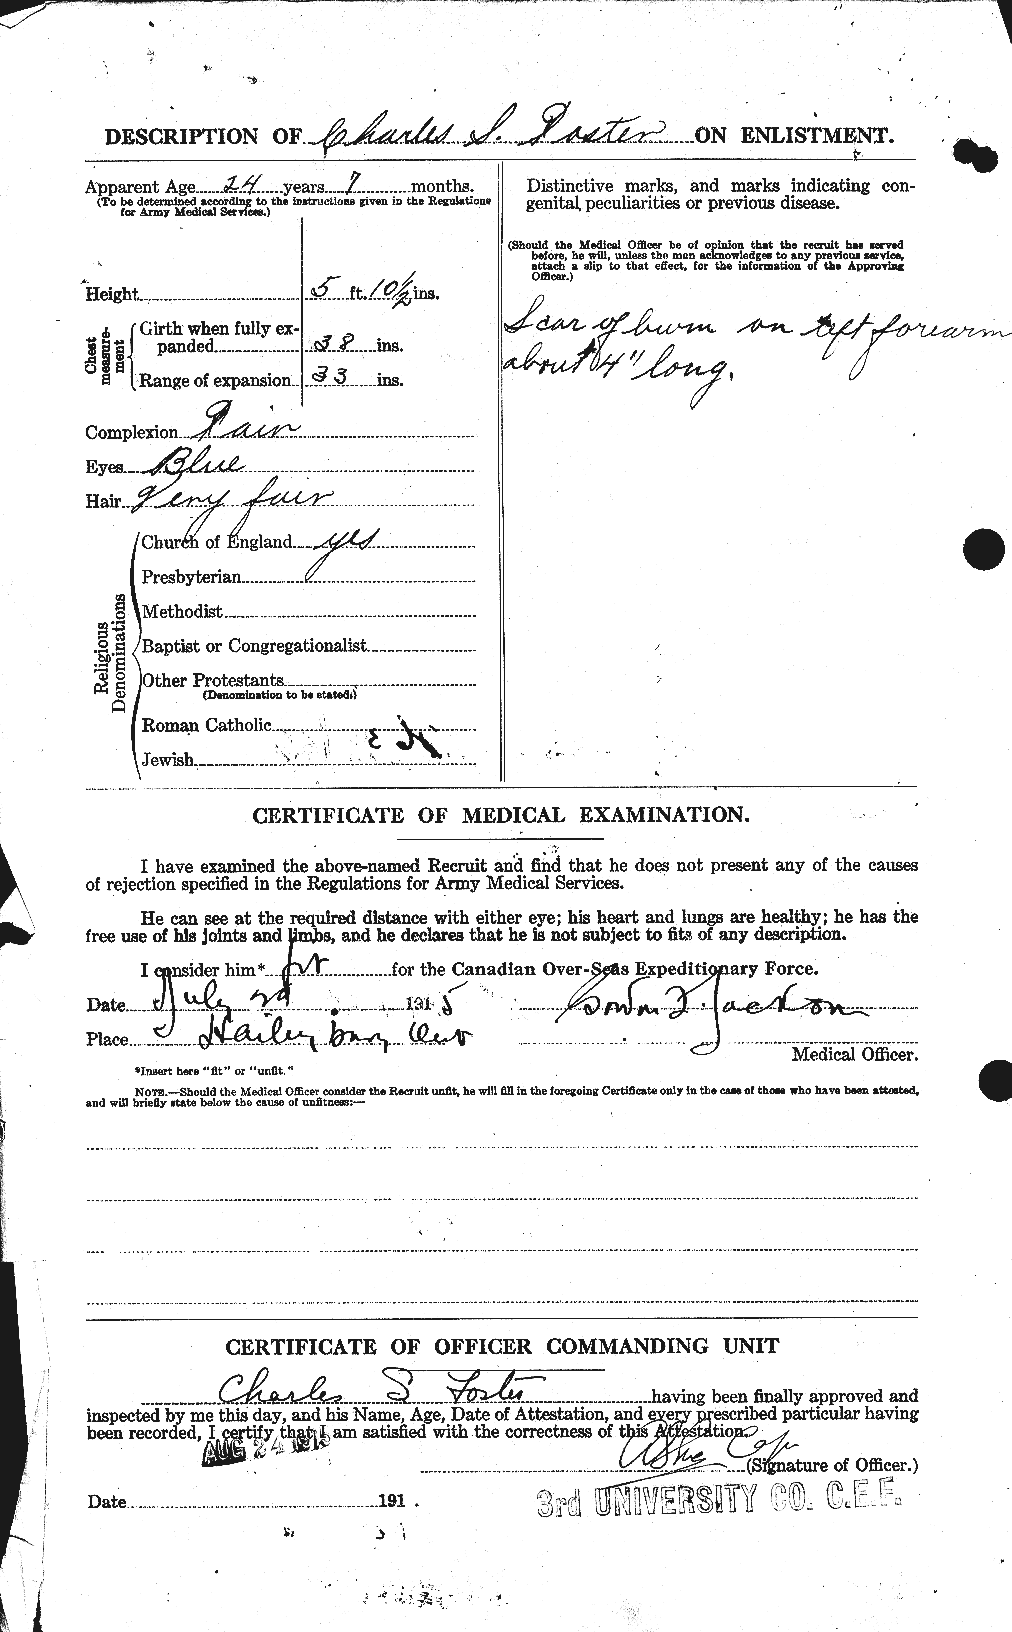 Dossiers du Personnel de la Première Guerre mondiale - CEC 330527b